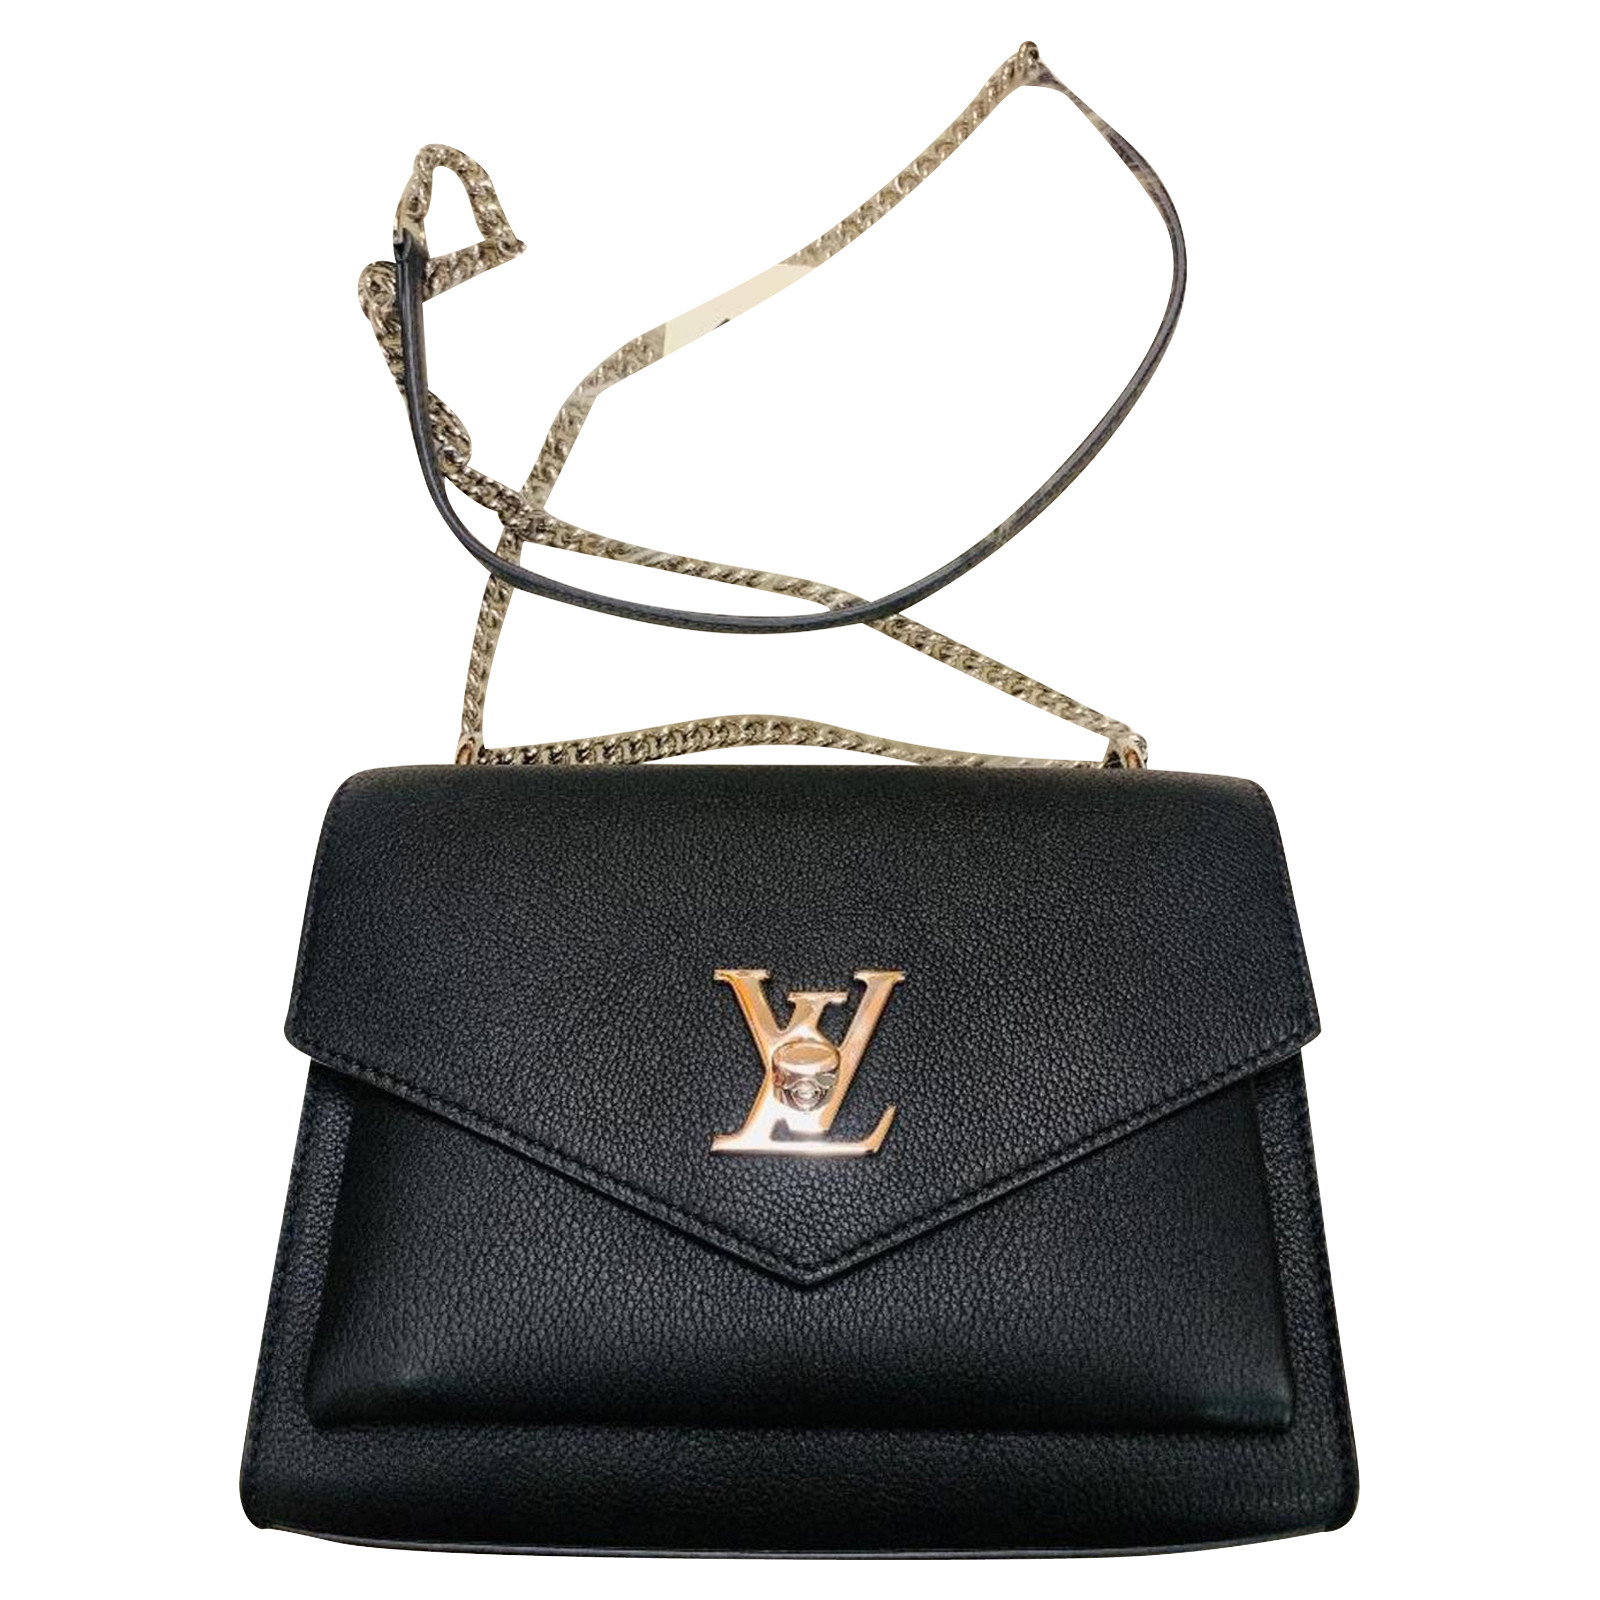 LOUIS VUITTON Women's Handtasche aus Leder in Schwarz